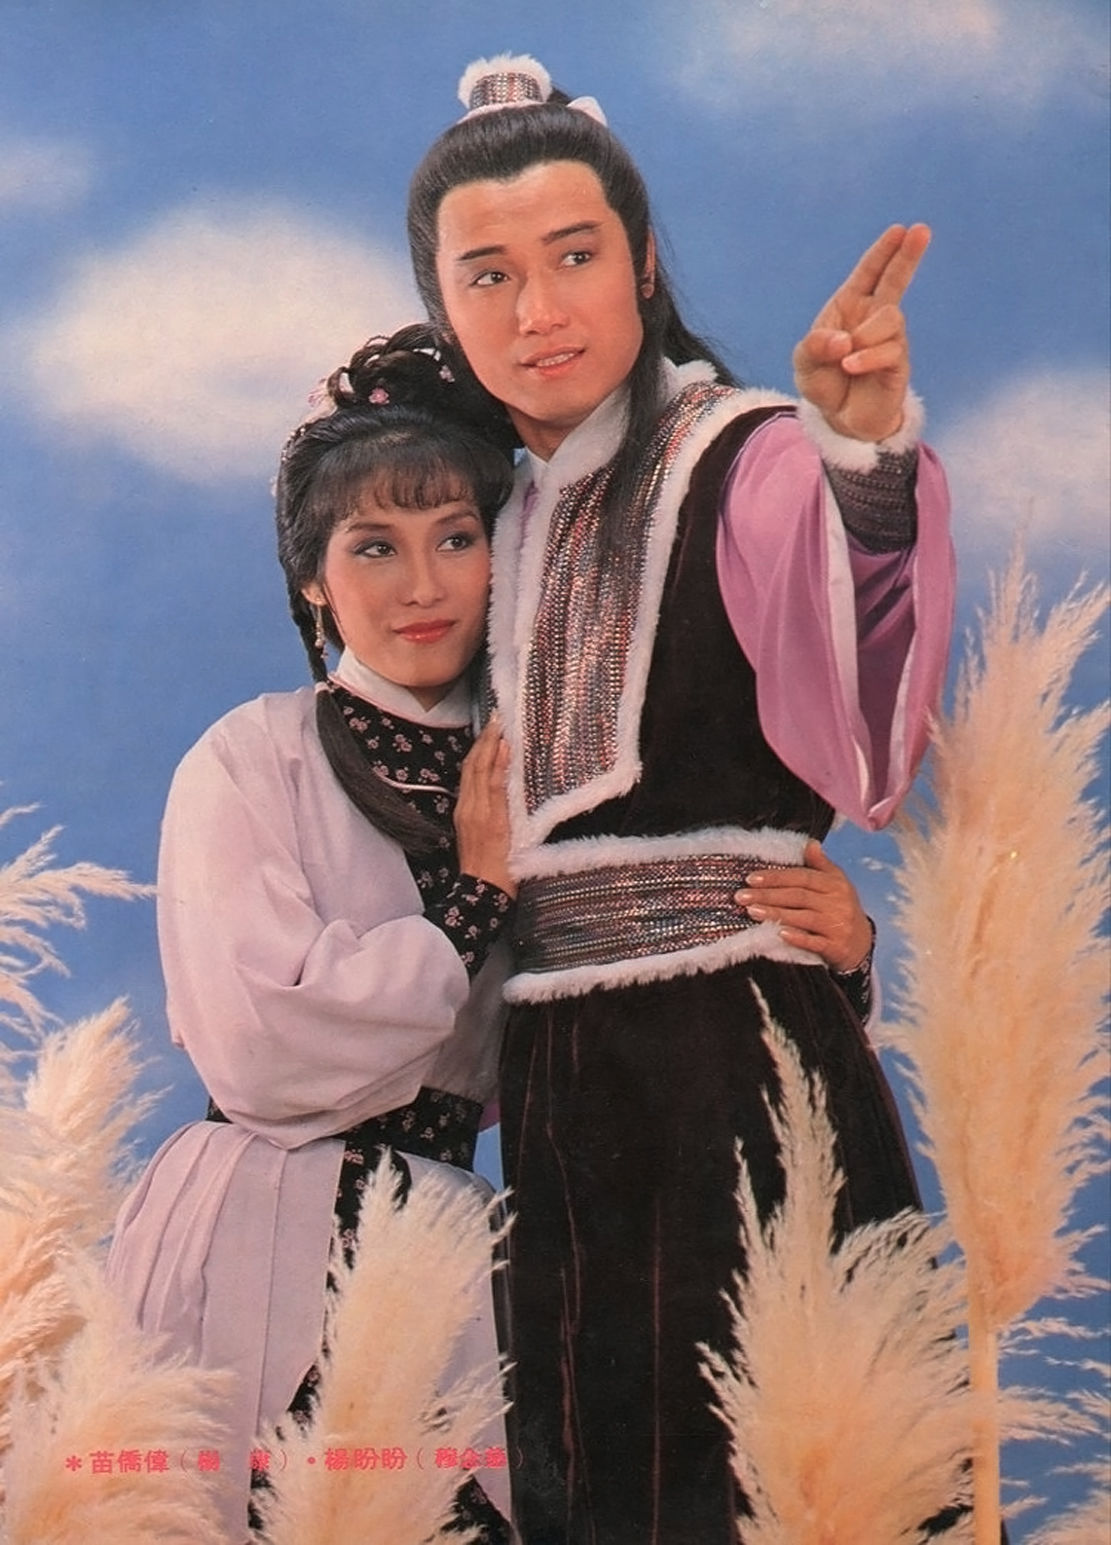 1983年经典版《射雕英雄传之铁血丹心》,郭靖